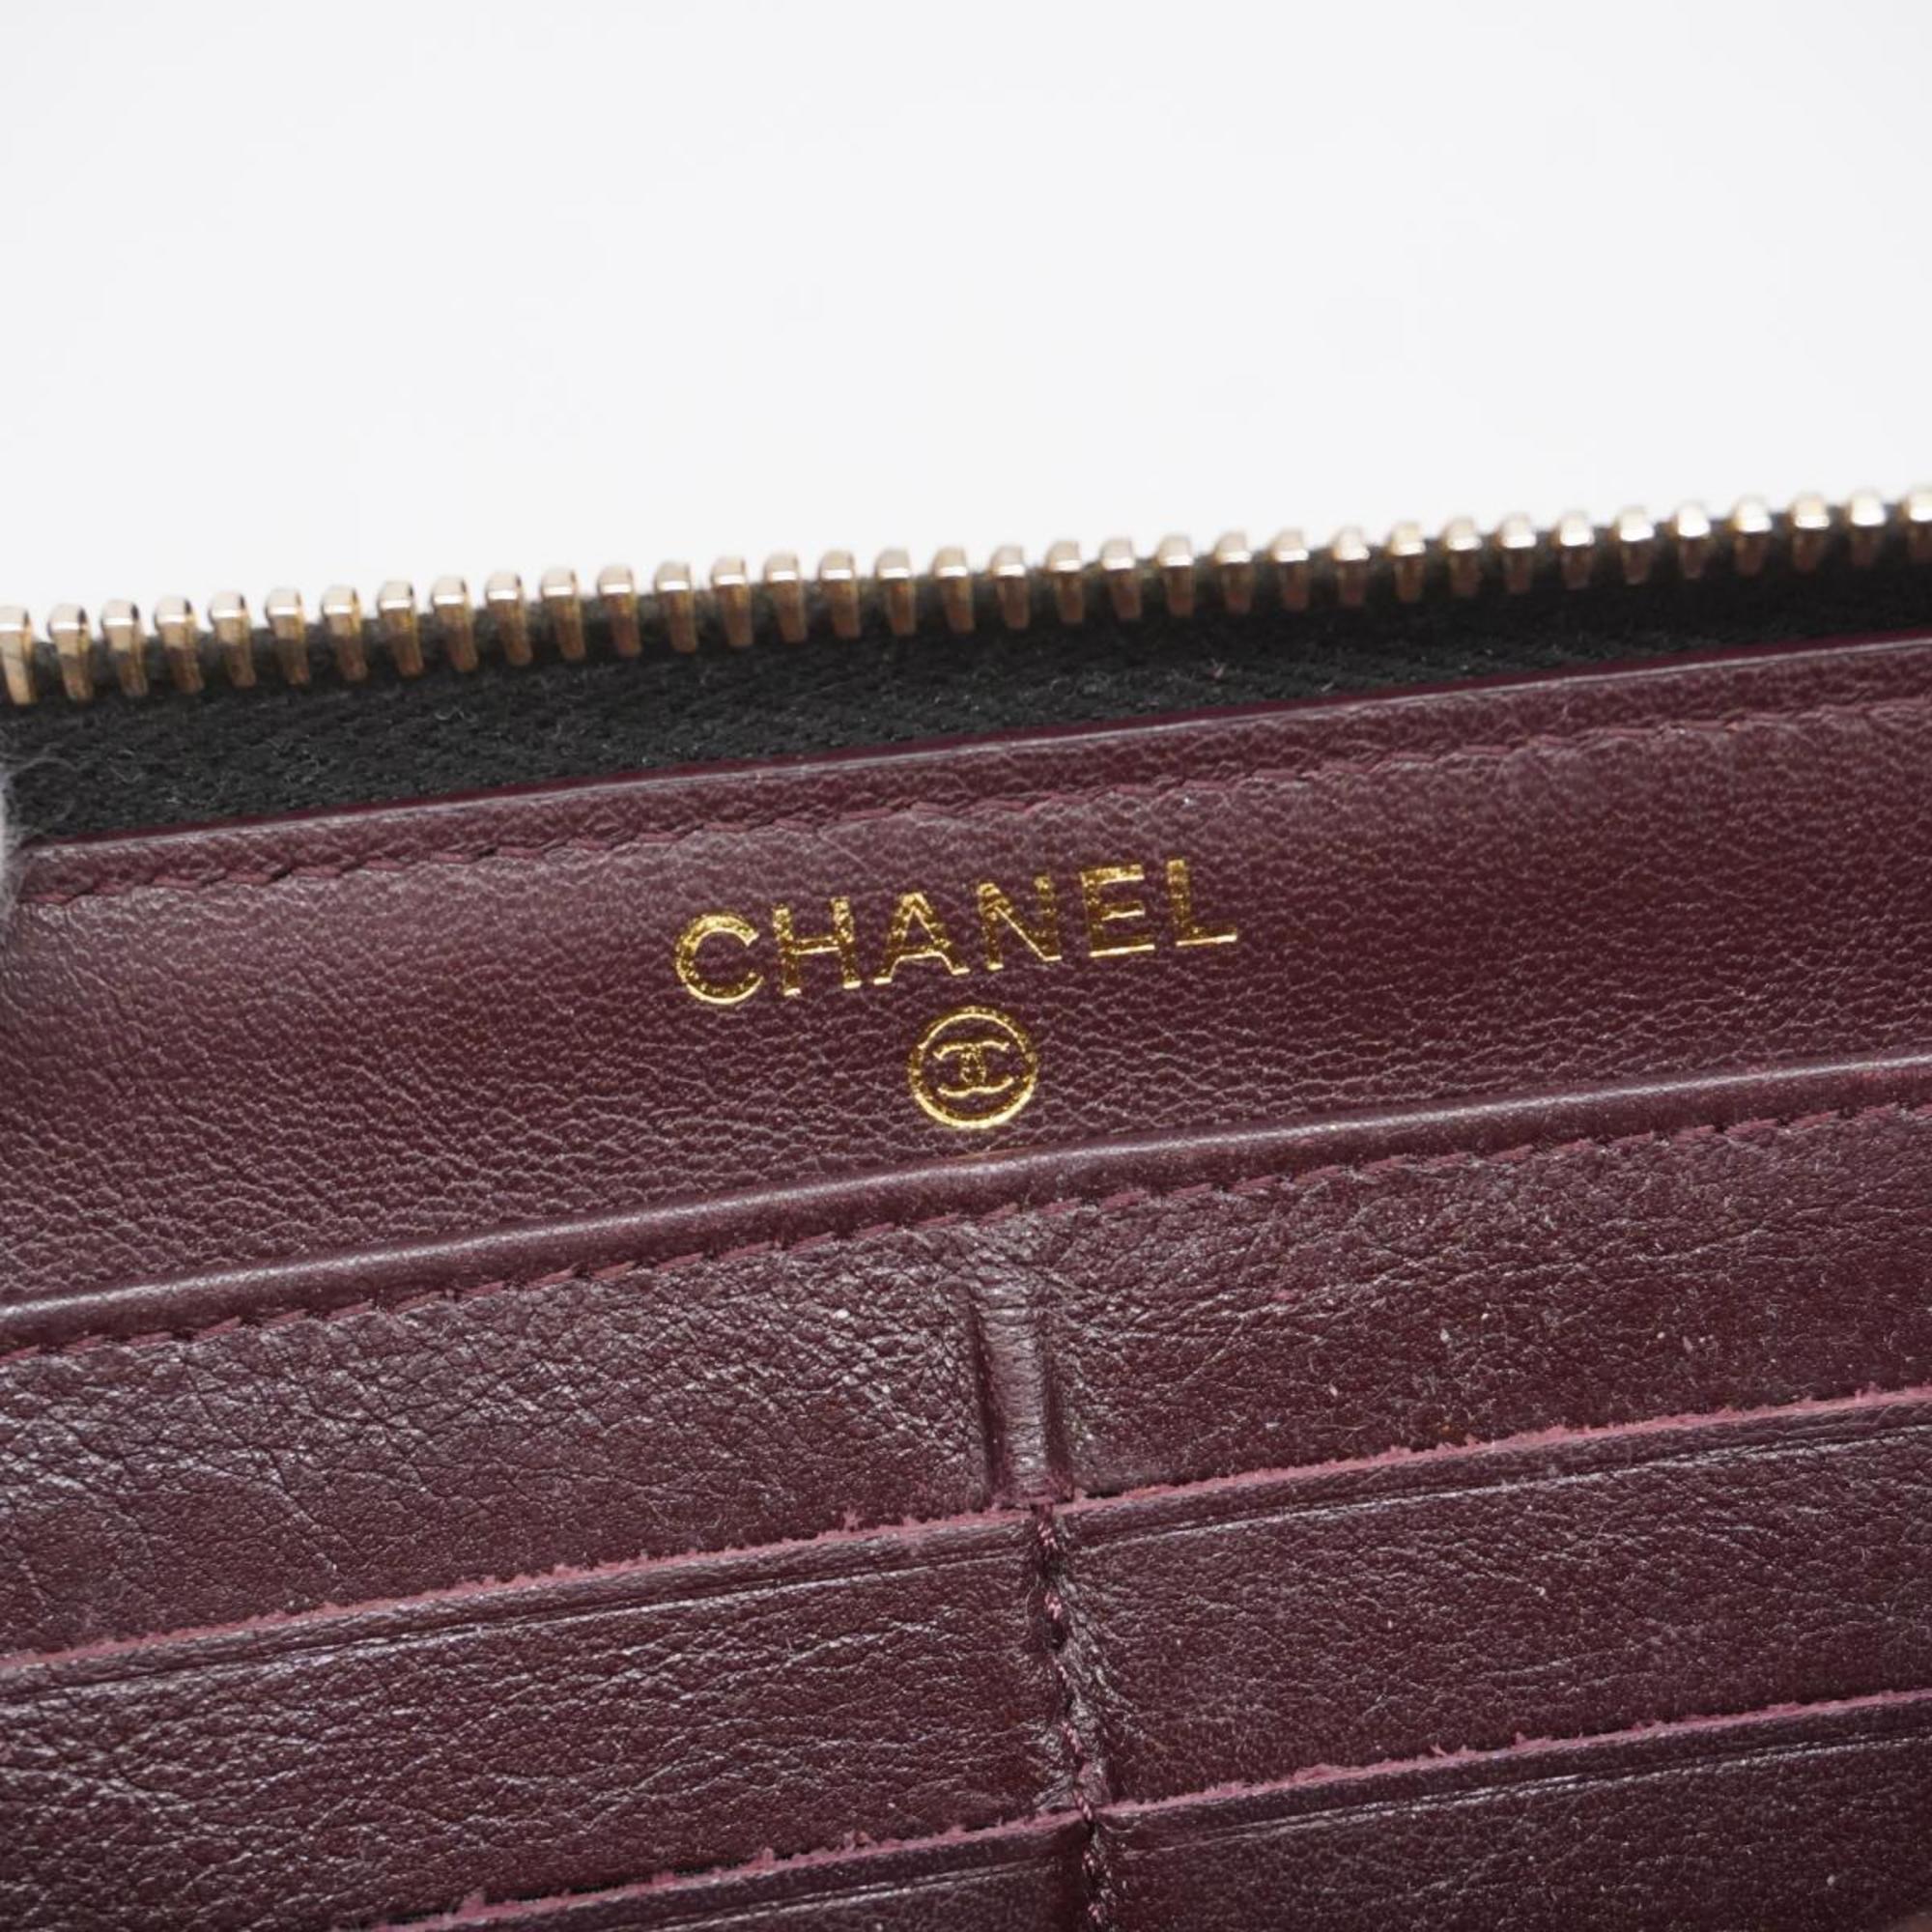 シャネル(Chanel) シャネル 長財布 マトラッセ キャビアスキン ブラック   レディース